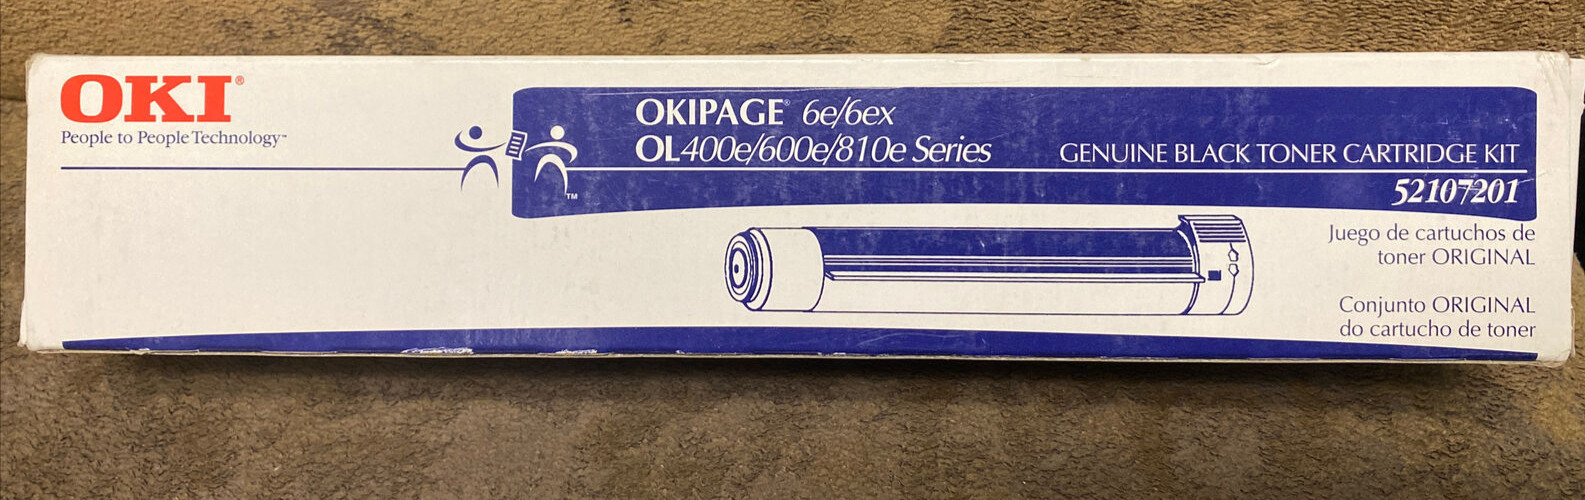 OKI OKIPAGE 6e/6ex OL440e/600e/810e Series 52107201 Black Toner Cartridge (1)